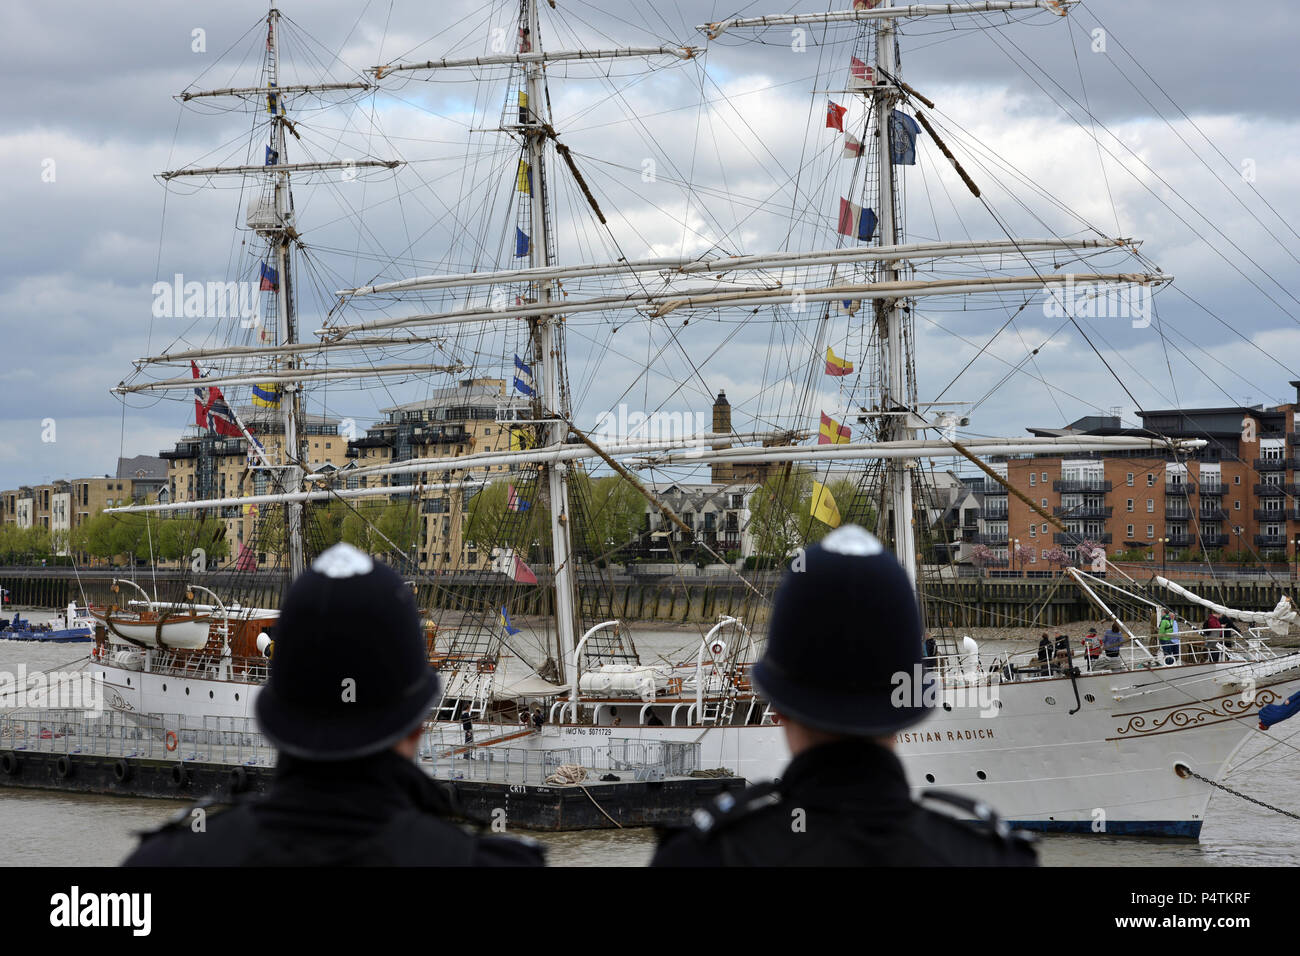 Al igual que la tall ships Londres policías párese derecho, alto, y listo. Foto de stock